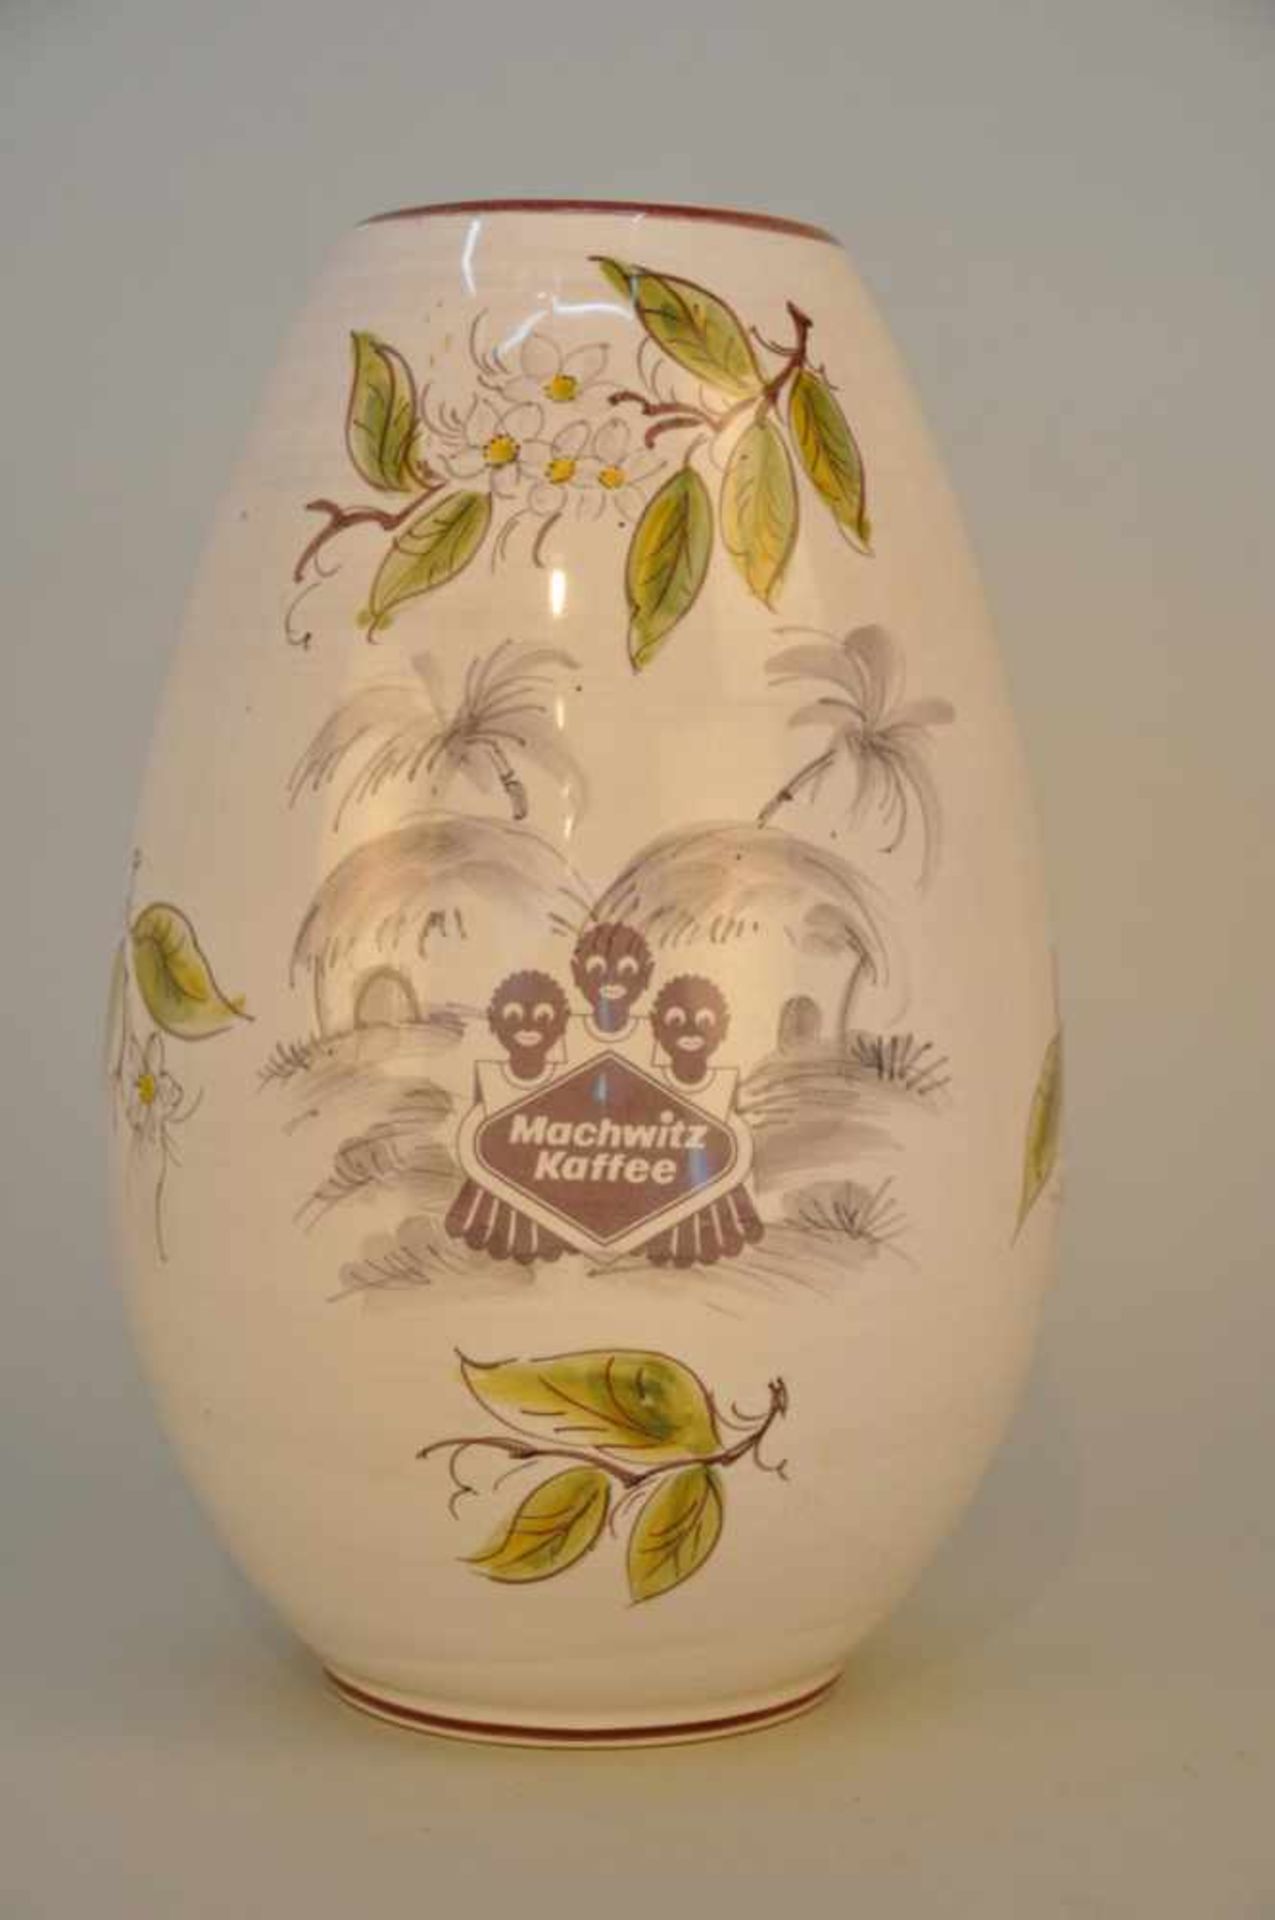 Blumenvase "Machwitz Kaffee". Ulmer Keramik, 1950/70er Jahre. Höhe ca. 27 cm, Stand 8,5 cm.